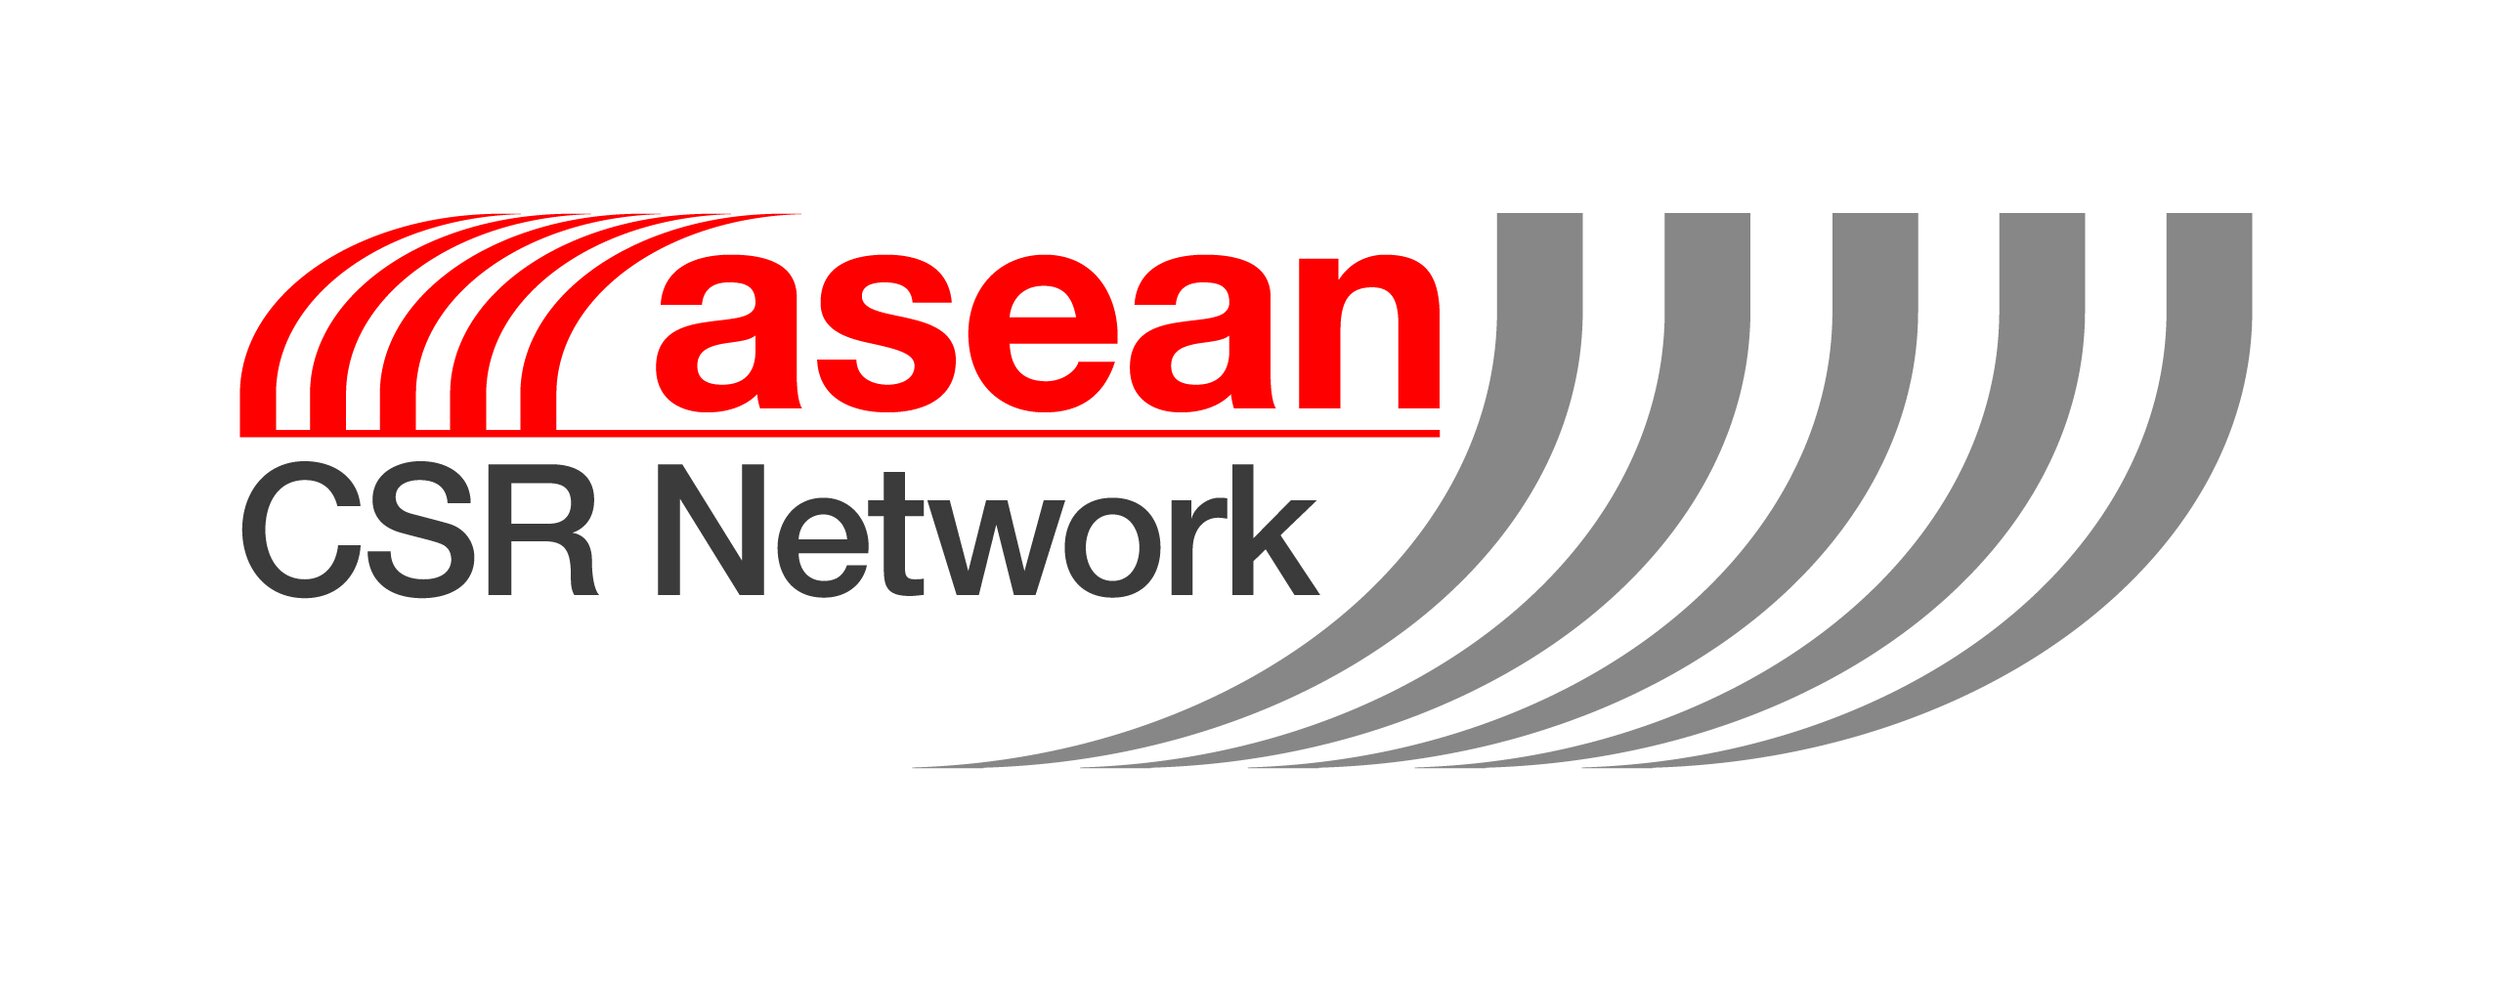 ASEAN CSR logo.jpg